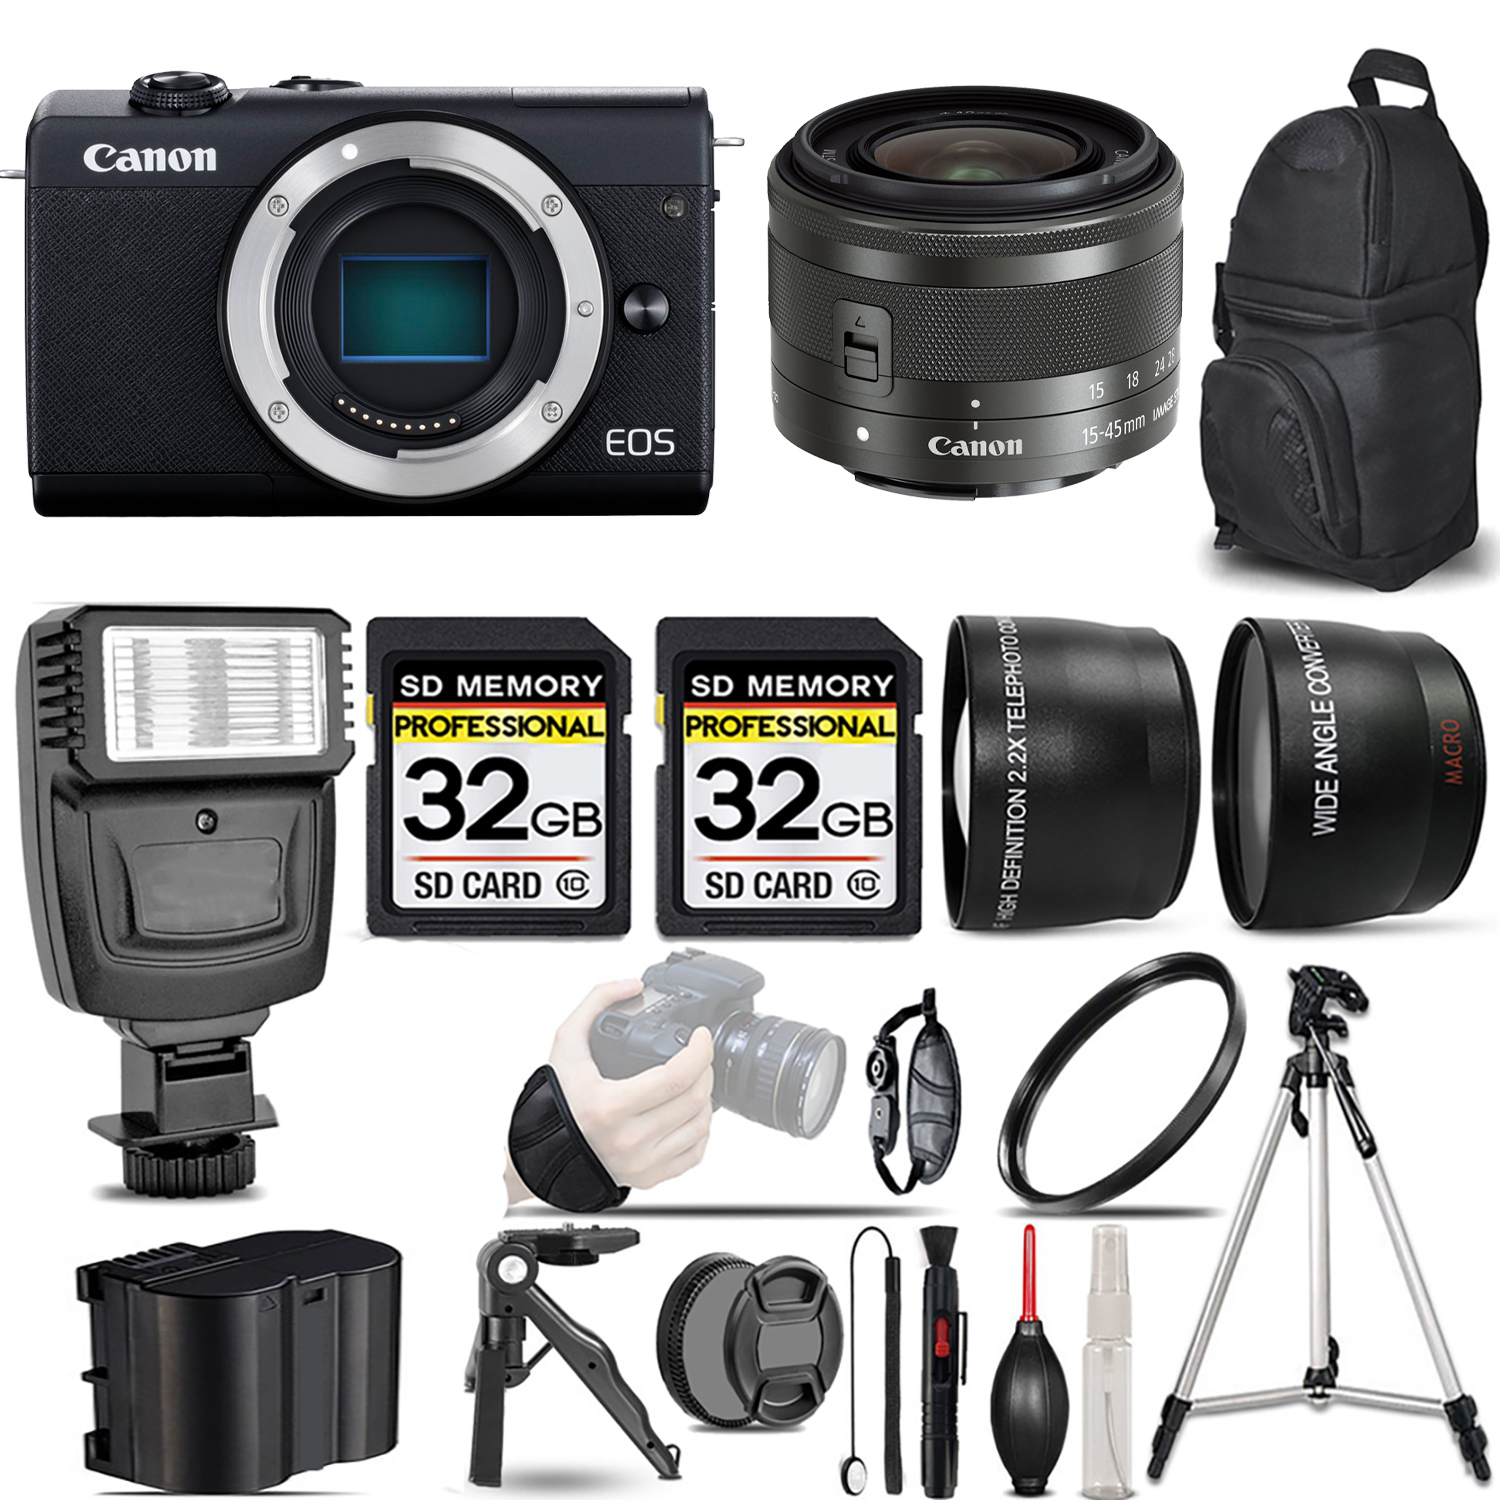 EOS M200  Camera (Black) + 15-45mm IS STM Lens (Graphite) + Flash + 64GB - Kit *FREE SHIPPING*